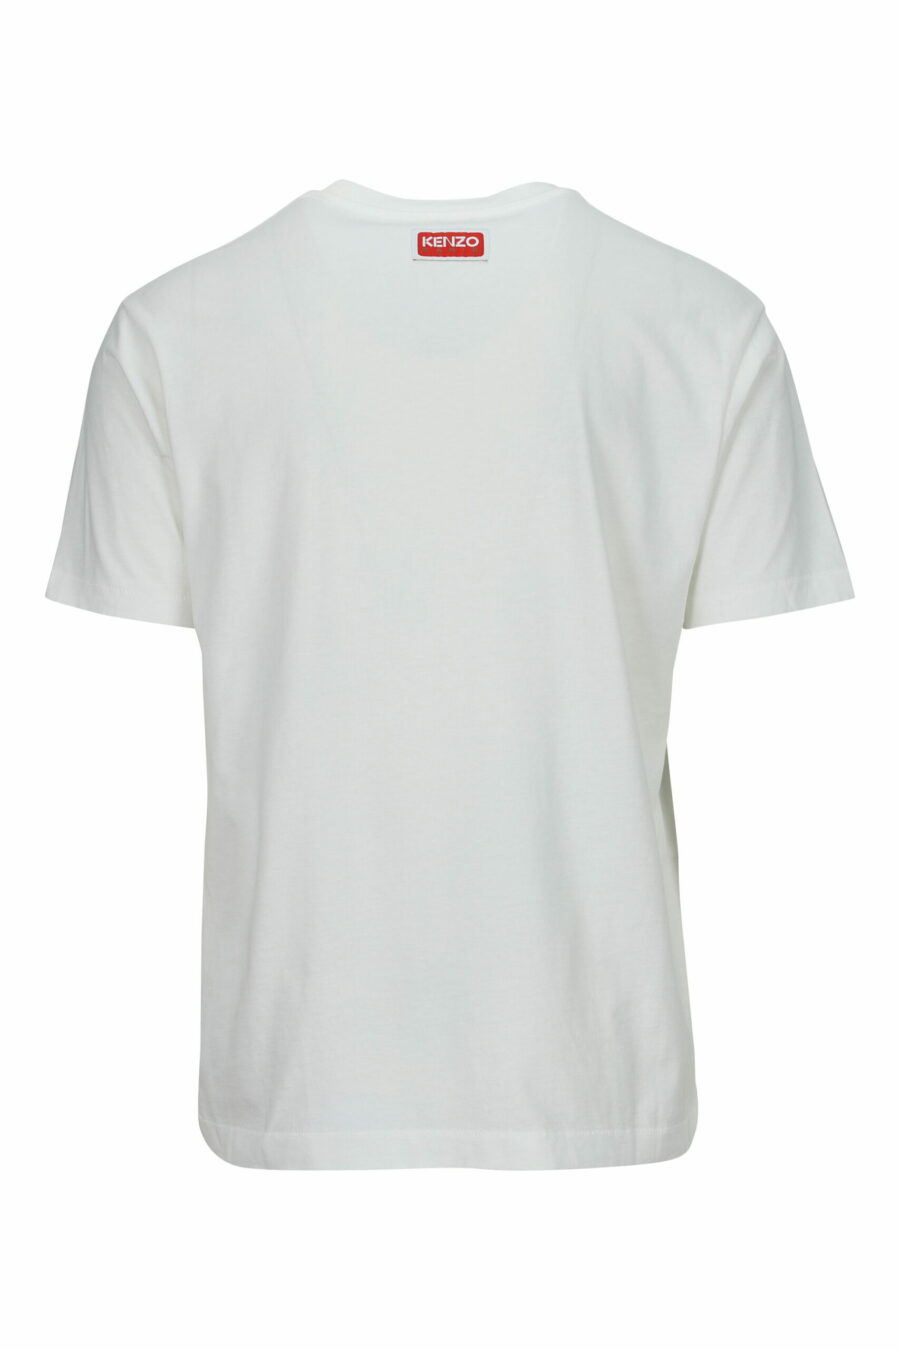 T-shirt branca de tamanho grande com o logótipo do tigre em relevo - 3612230568013 1 scaled